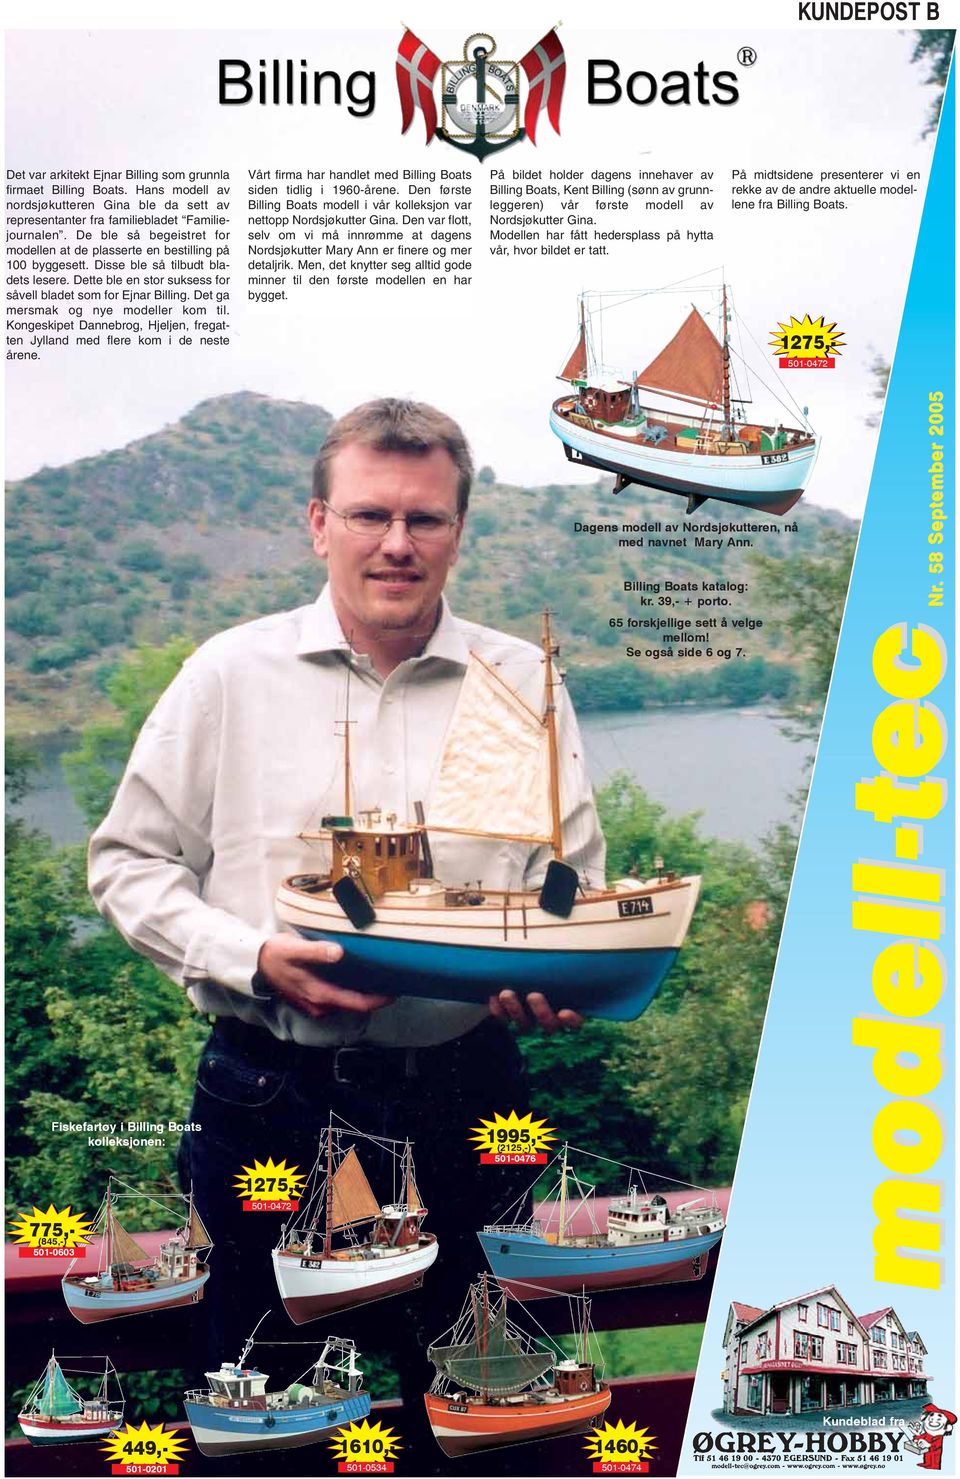 Det ga mersmak og nye modeller kom til. Kongeskipet Dannebrog, Hjeljen, fregatten Jylland med flere kom i de neste årene. Vårt firma har handlet med Billing Boats siden tidlig i 1960-årene.